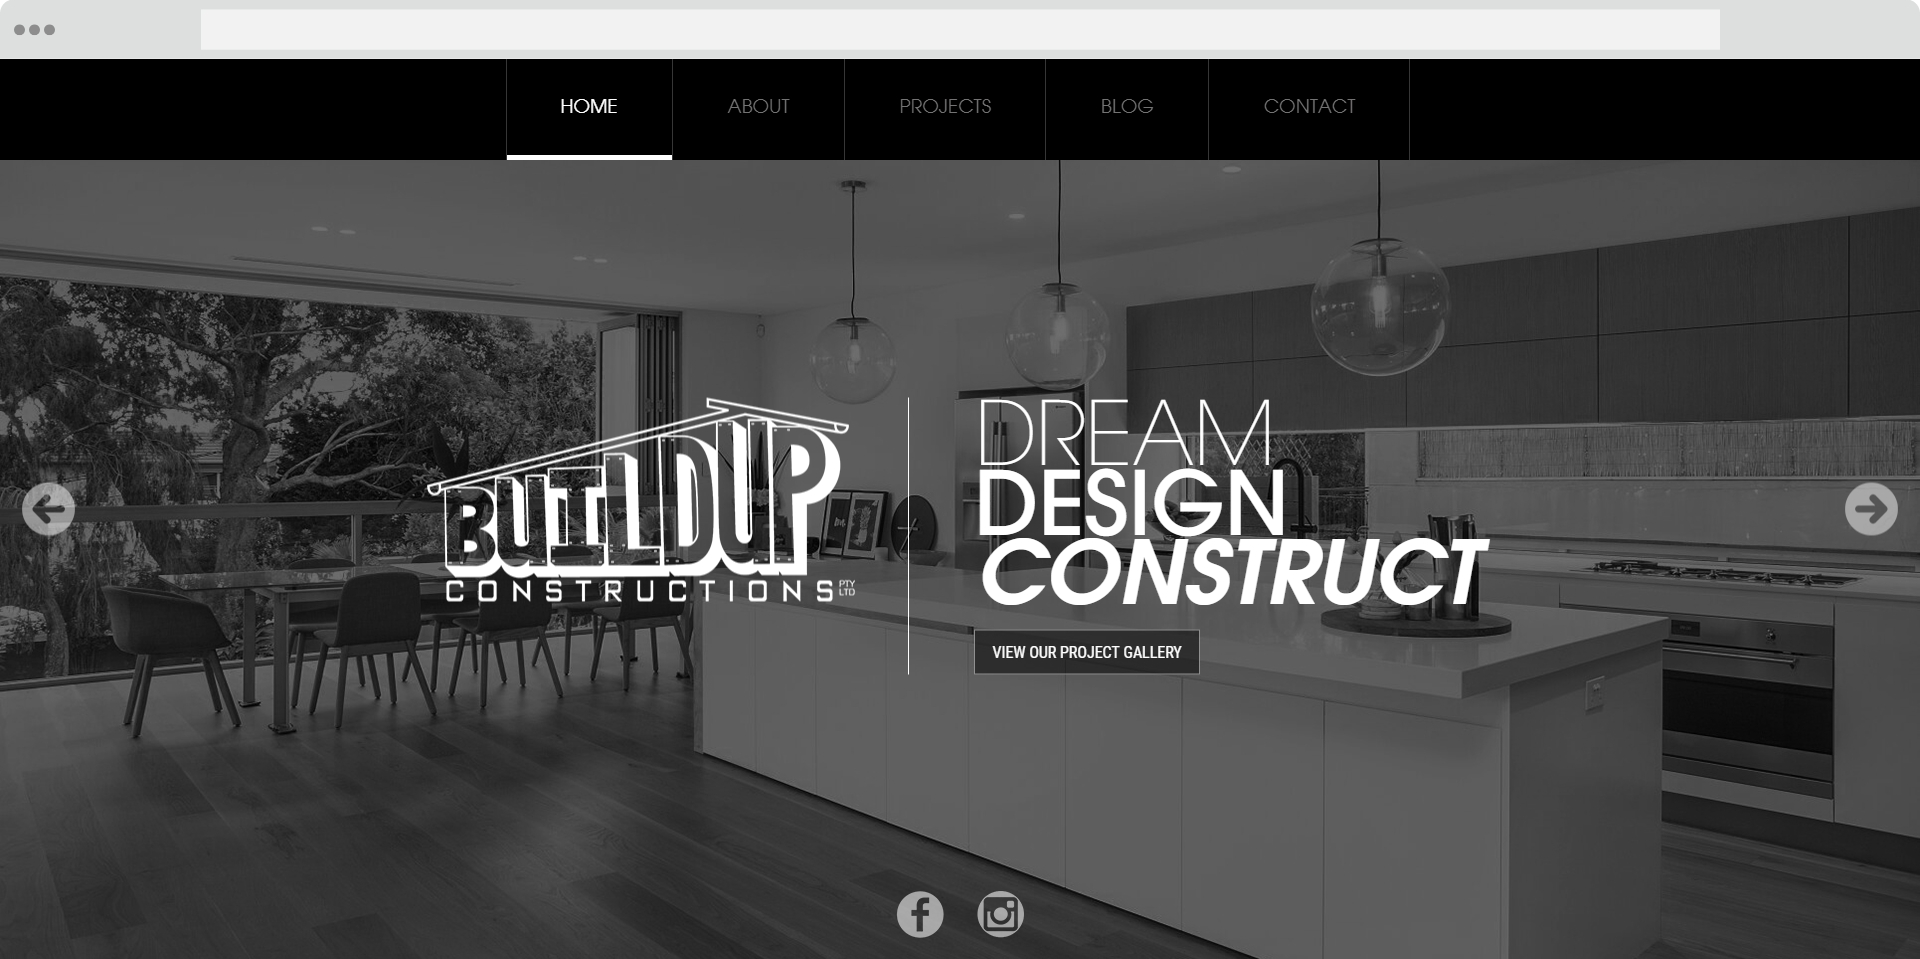 buildup constructions website homepage